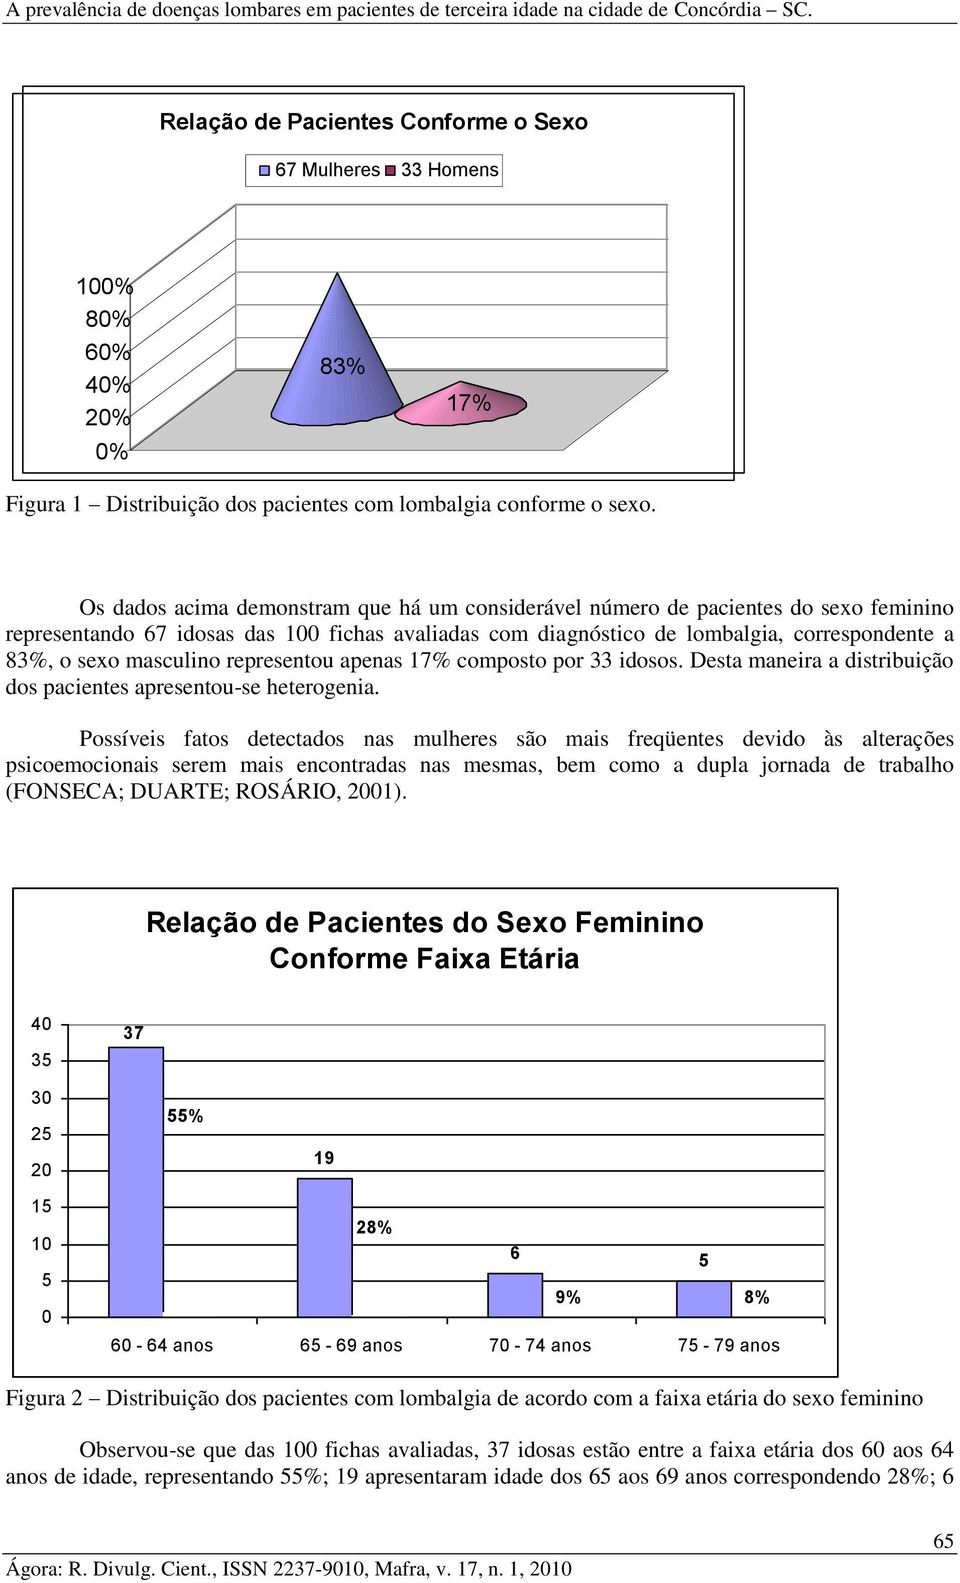 Os dados acima demonstram que há um considerável número de pacientes do sexo feminino representando 67 idosas das fichas avaliadas com diagnóstico de lombalgia, correspondente a 83%, o sexo masculino